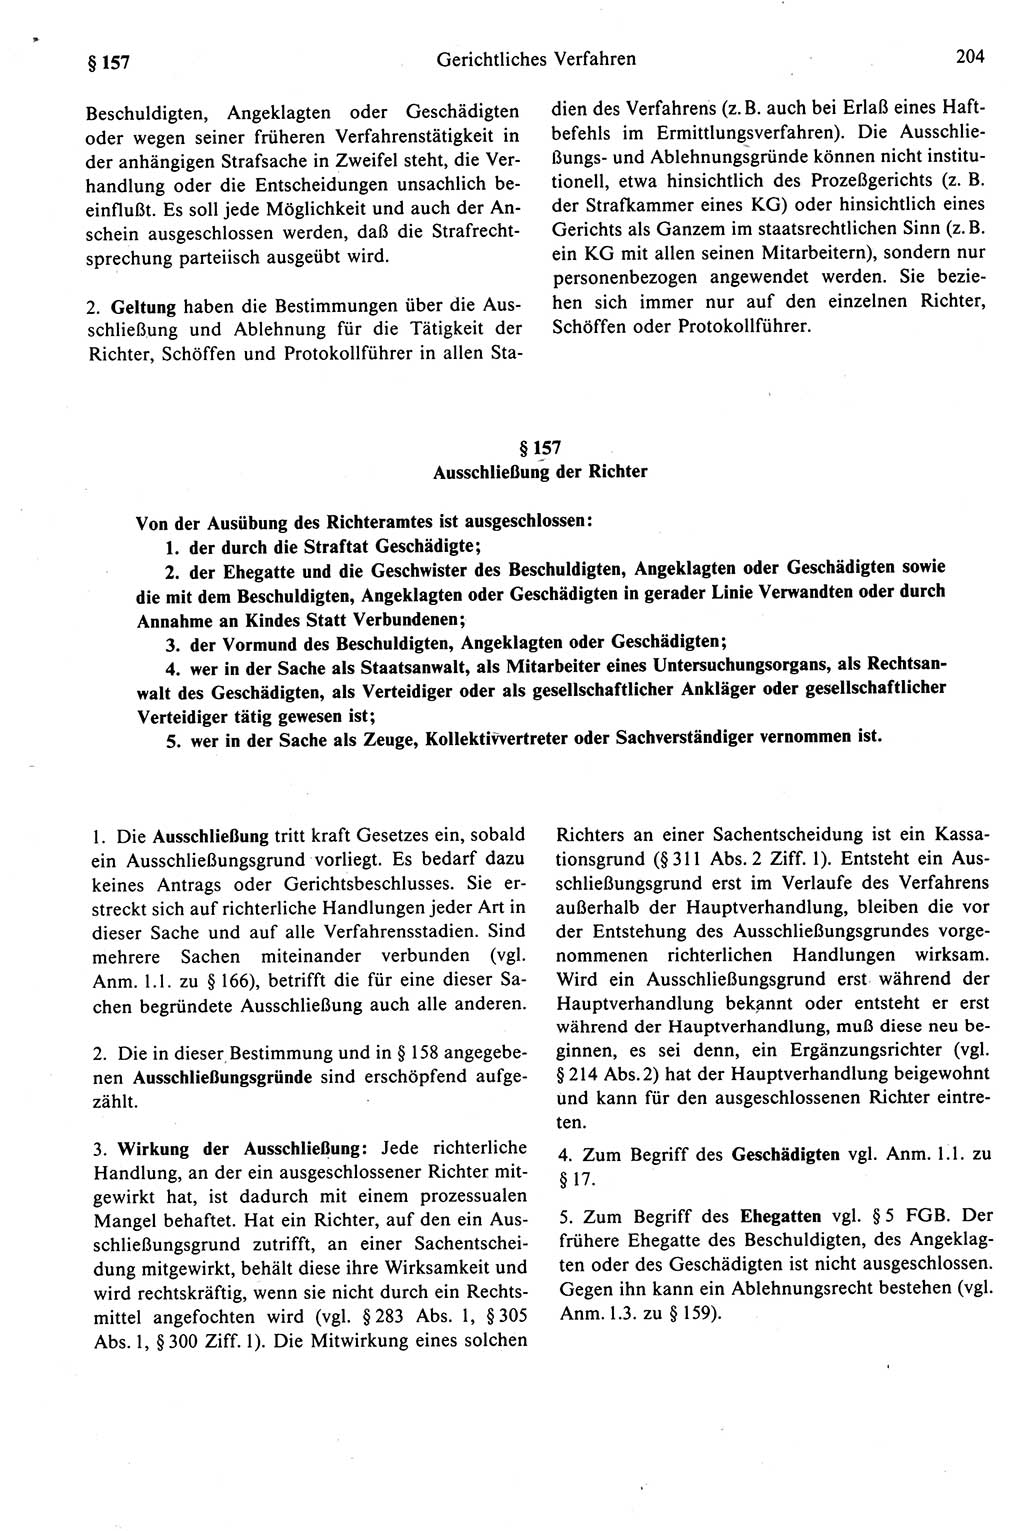 Strafprozeßrecht der DDR (Deutsche Demokratische Republik), Kommentar zur Strafprozeßordnung (StPO) 1989, Seite 204 (Strafprozeßr. DDR Komm. StPO 1989, S. 204)